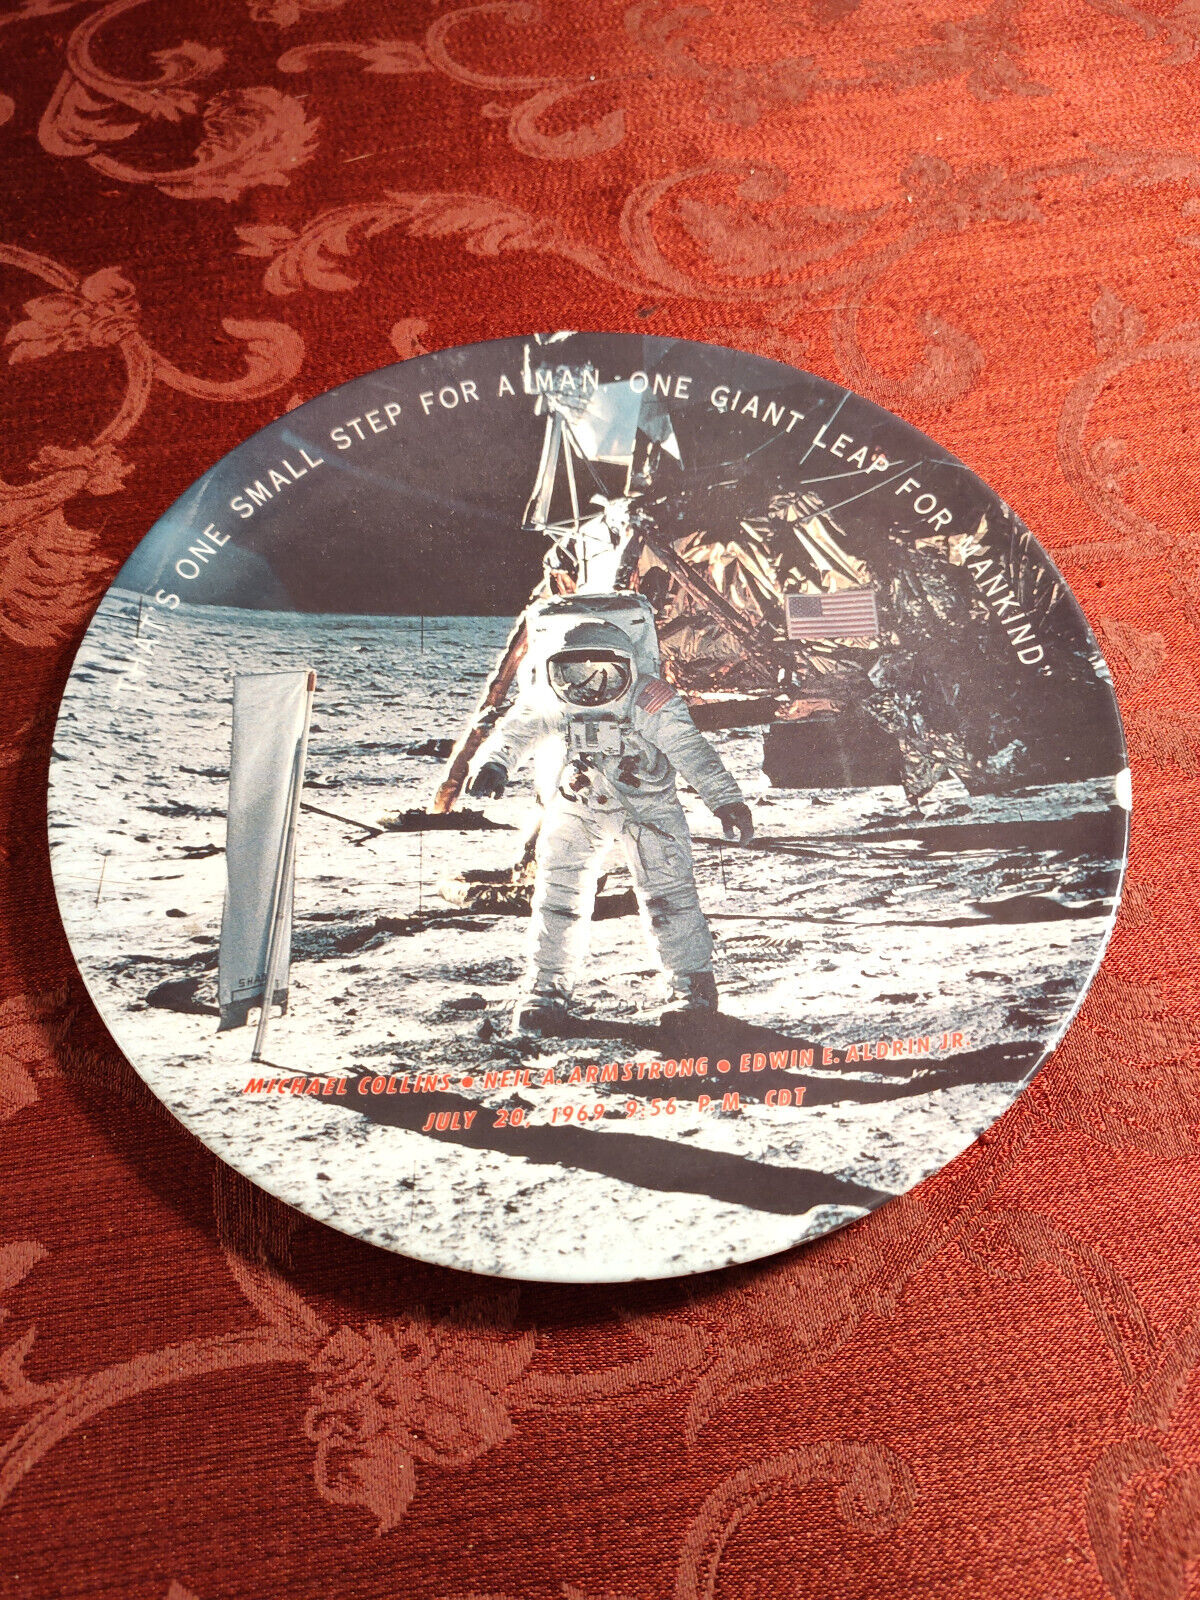 RARE Apollo 11 Commemorative Plate from 1969 Texas Ware